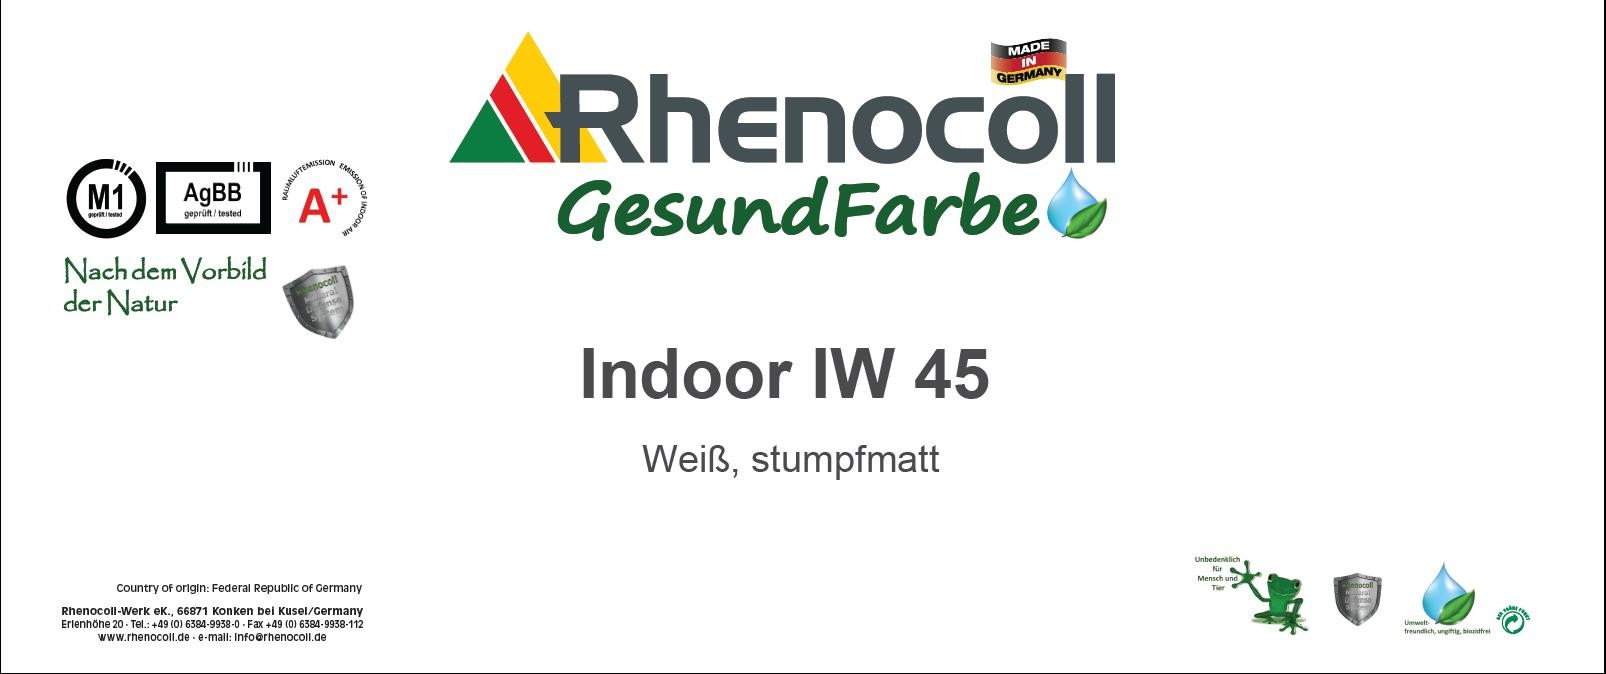 Rhenocoll Indoor IW 45